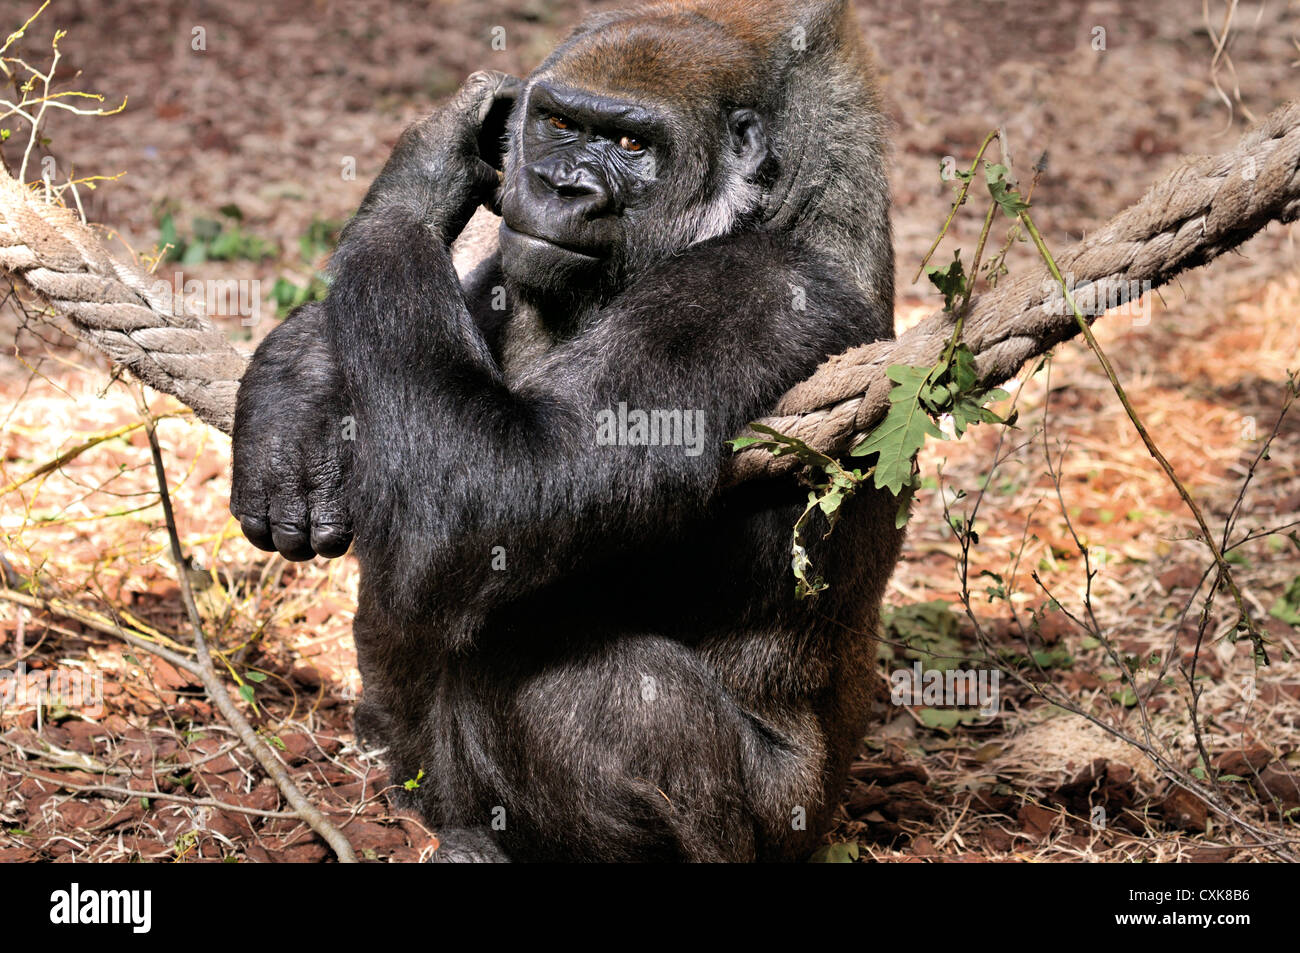 Spagna Cantabria: Gorilla (Gorilla gorilla) nel parco animale Carbaceno vicino a Santander Foto Stock